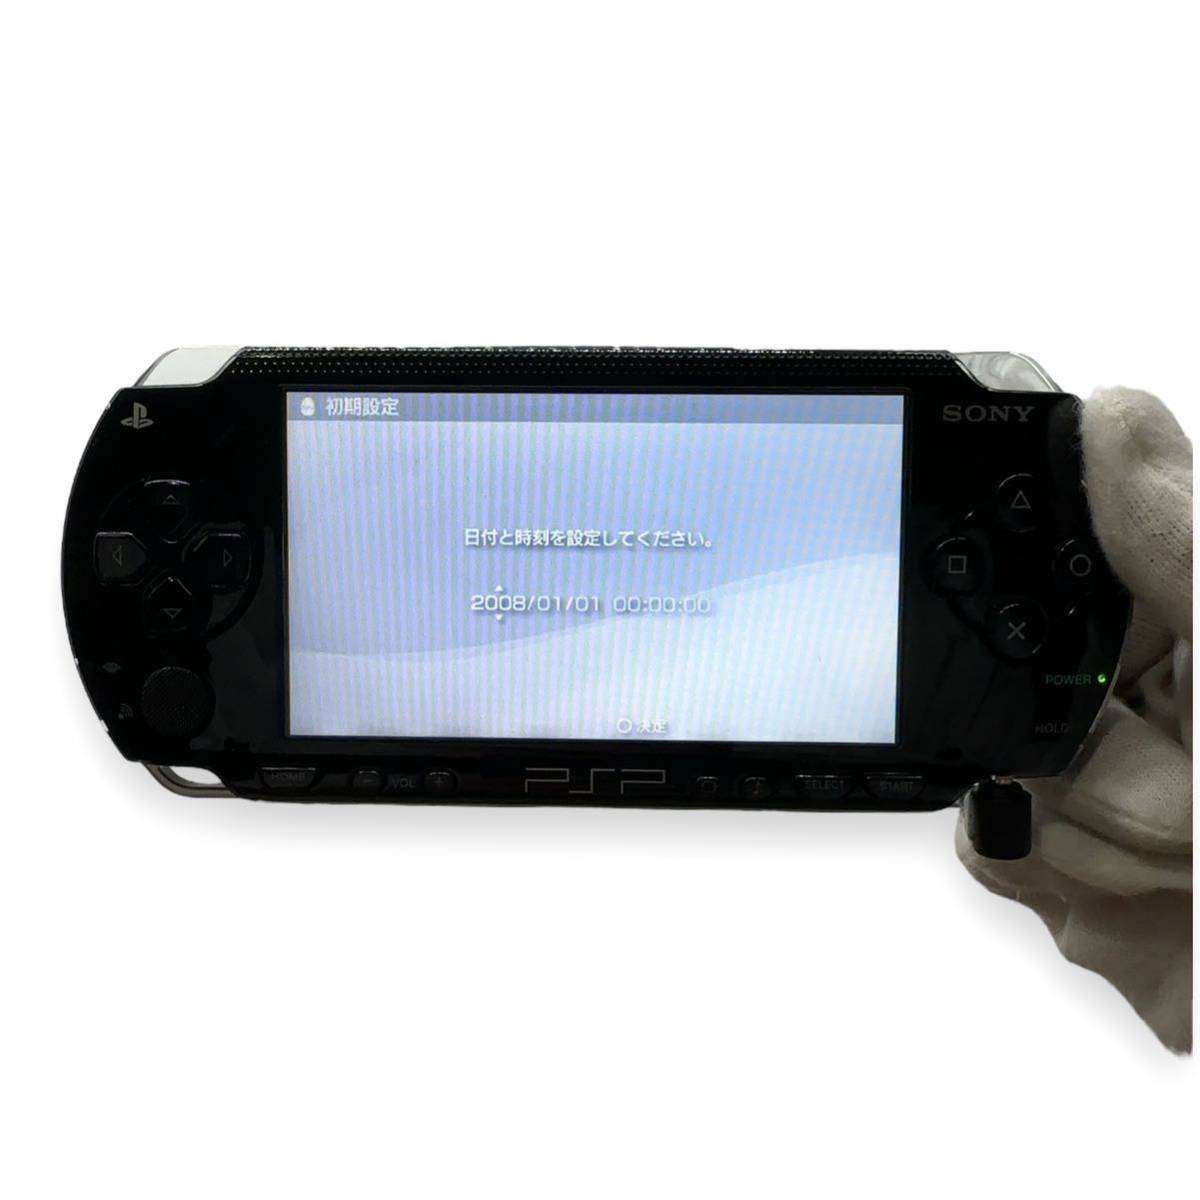 極美品 SONY PlayStation Portable PSP-1000 本体 ブラック GIGA PACK _画像2